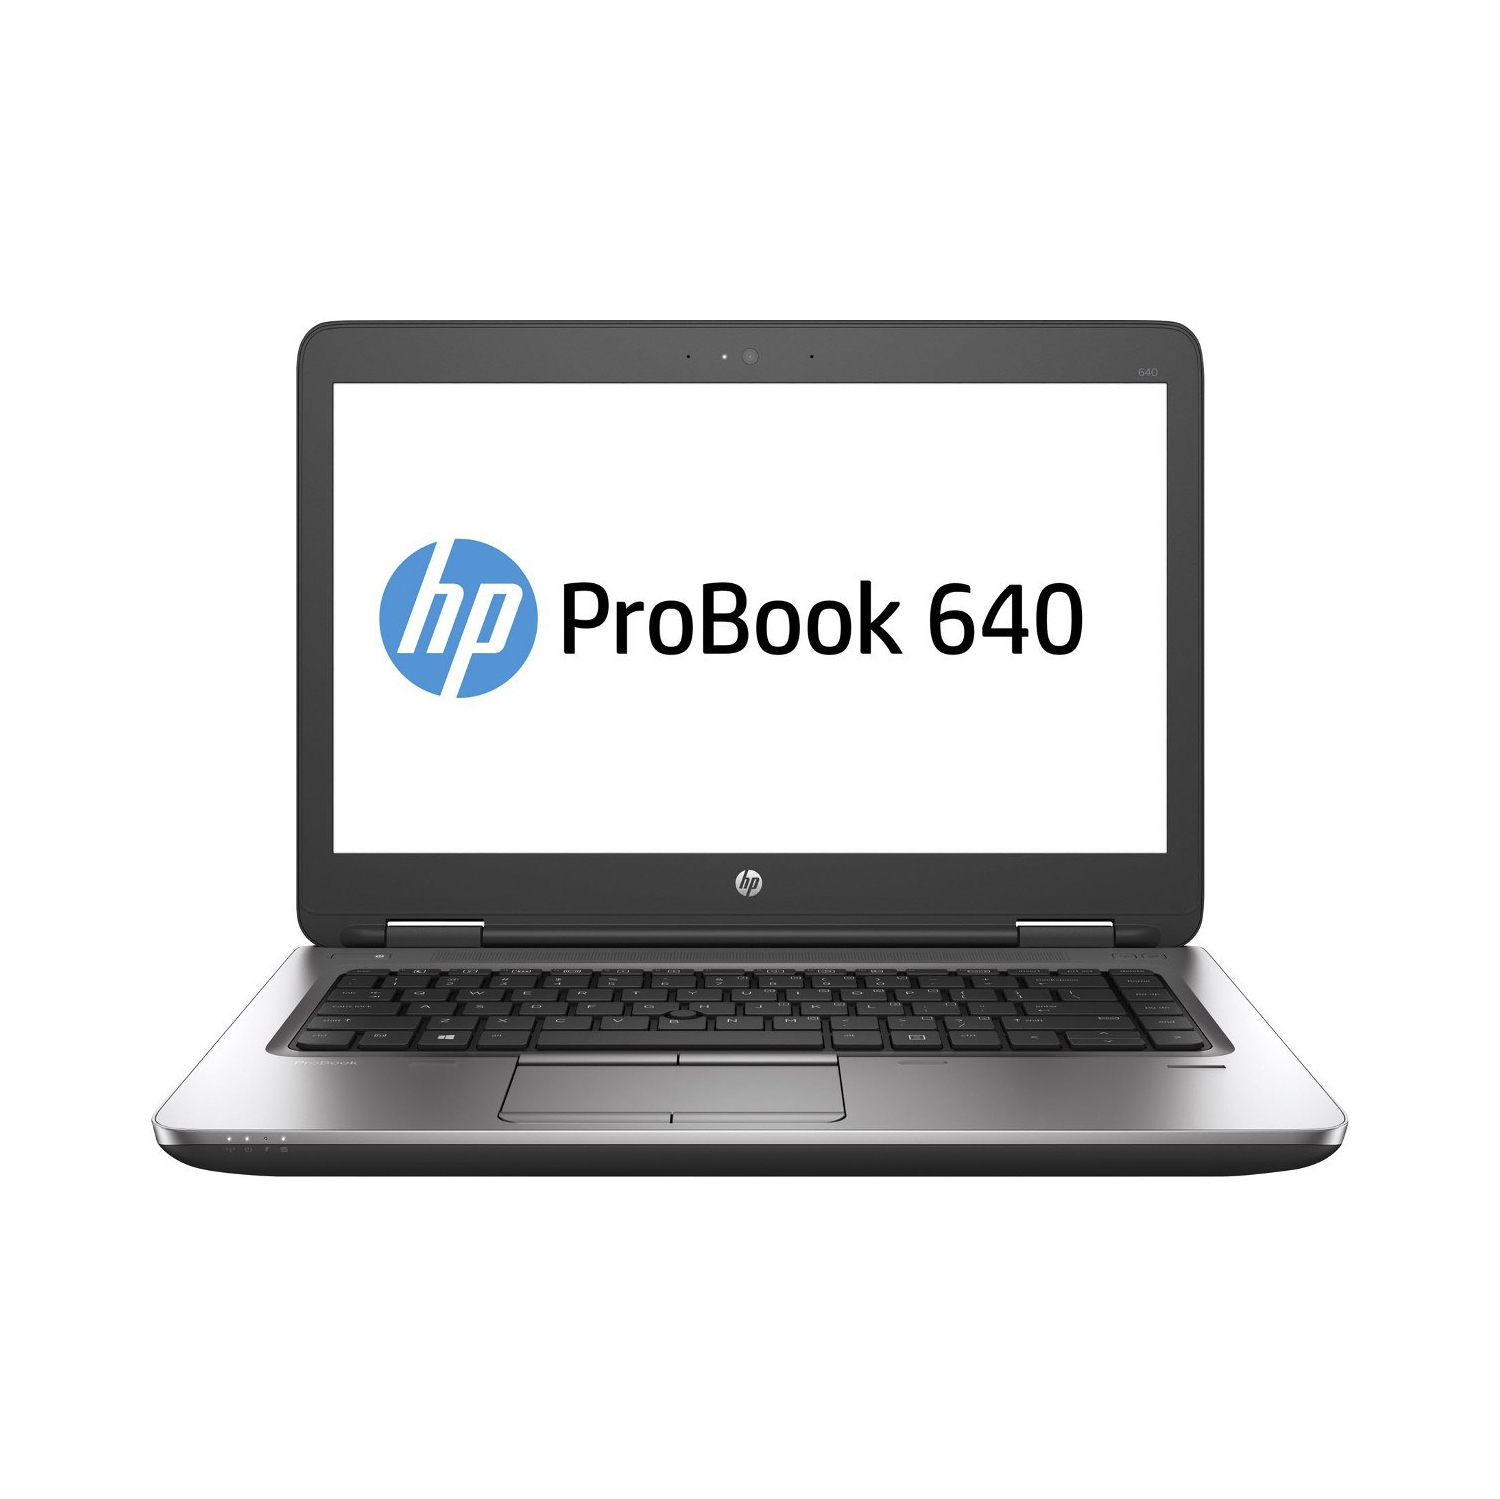 Refurbished (Excellent) - HP ProBook 640 G2 14" Laptop, Intel Core i7 6600U up to 3.4G, 12G DDR4, 1T, VGA, DP, USB Type-C, W10P64 (EN/FR/ES)